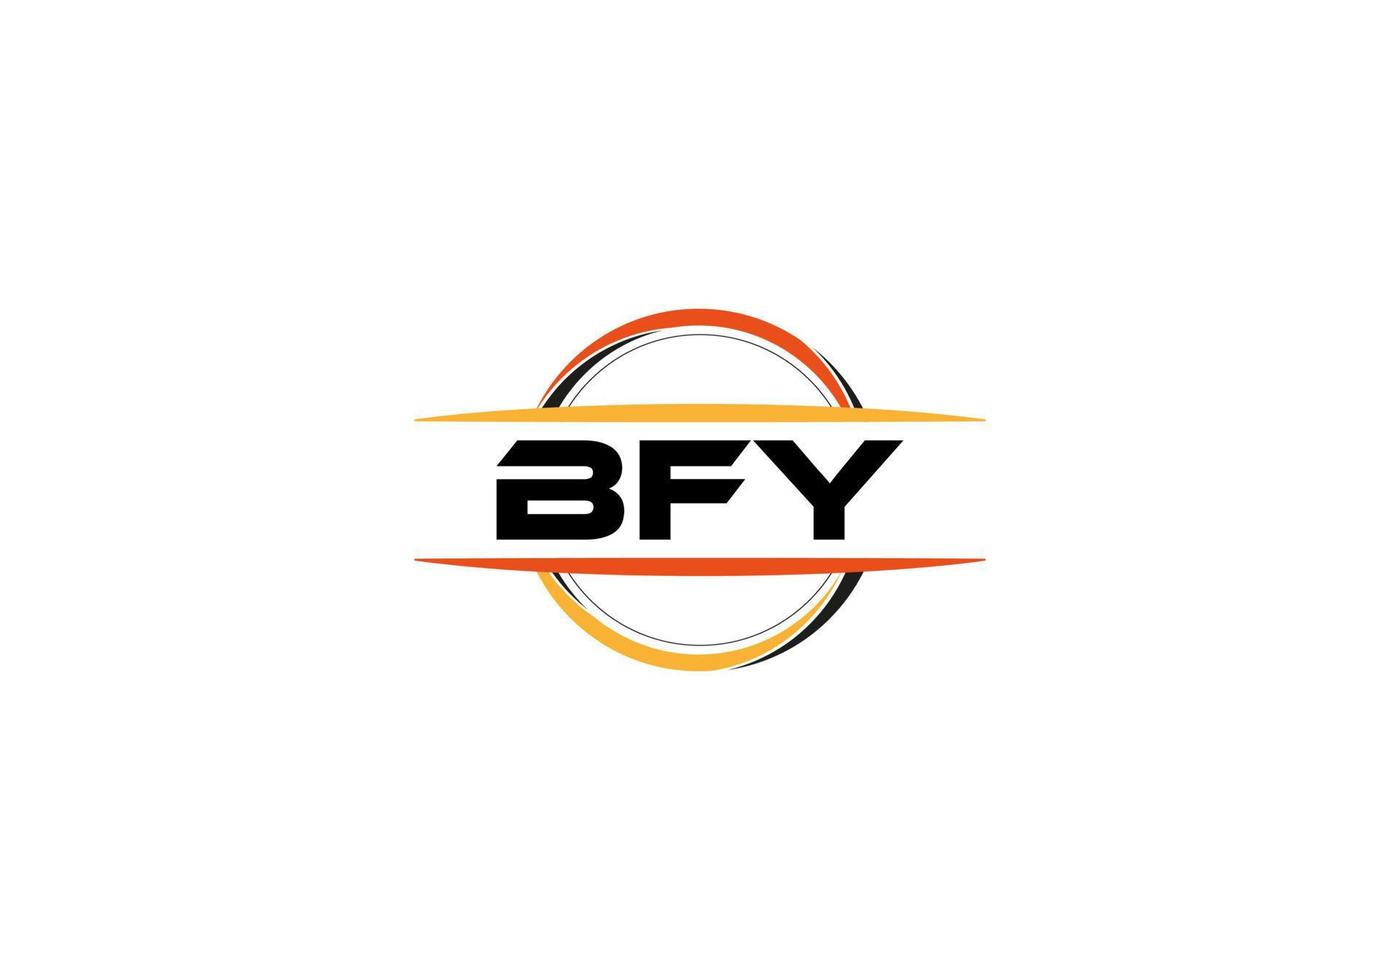 bfy letra realeza elipse forma logo. bfy cepillo Arte logo. bfy logo para un compañía, negocio, y comercial usar. vector